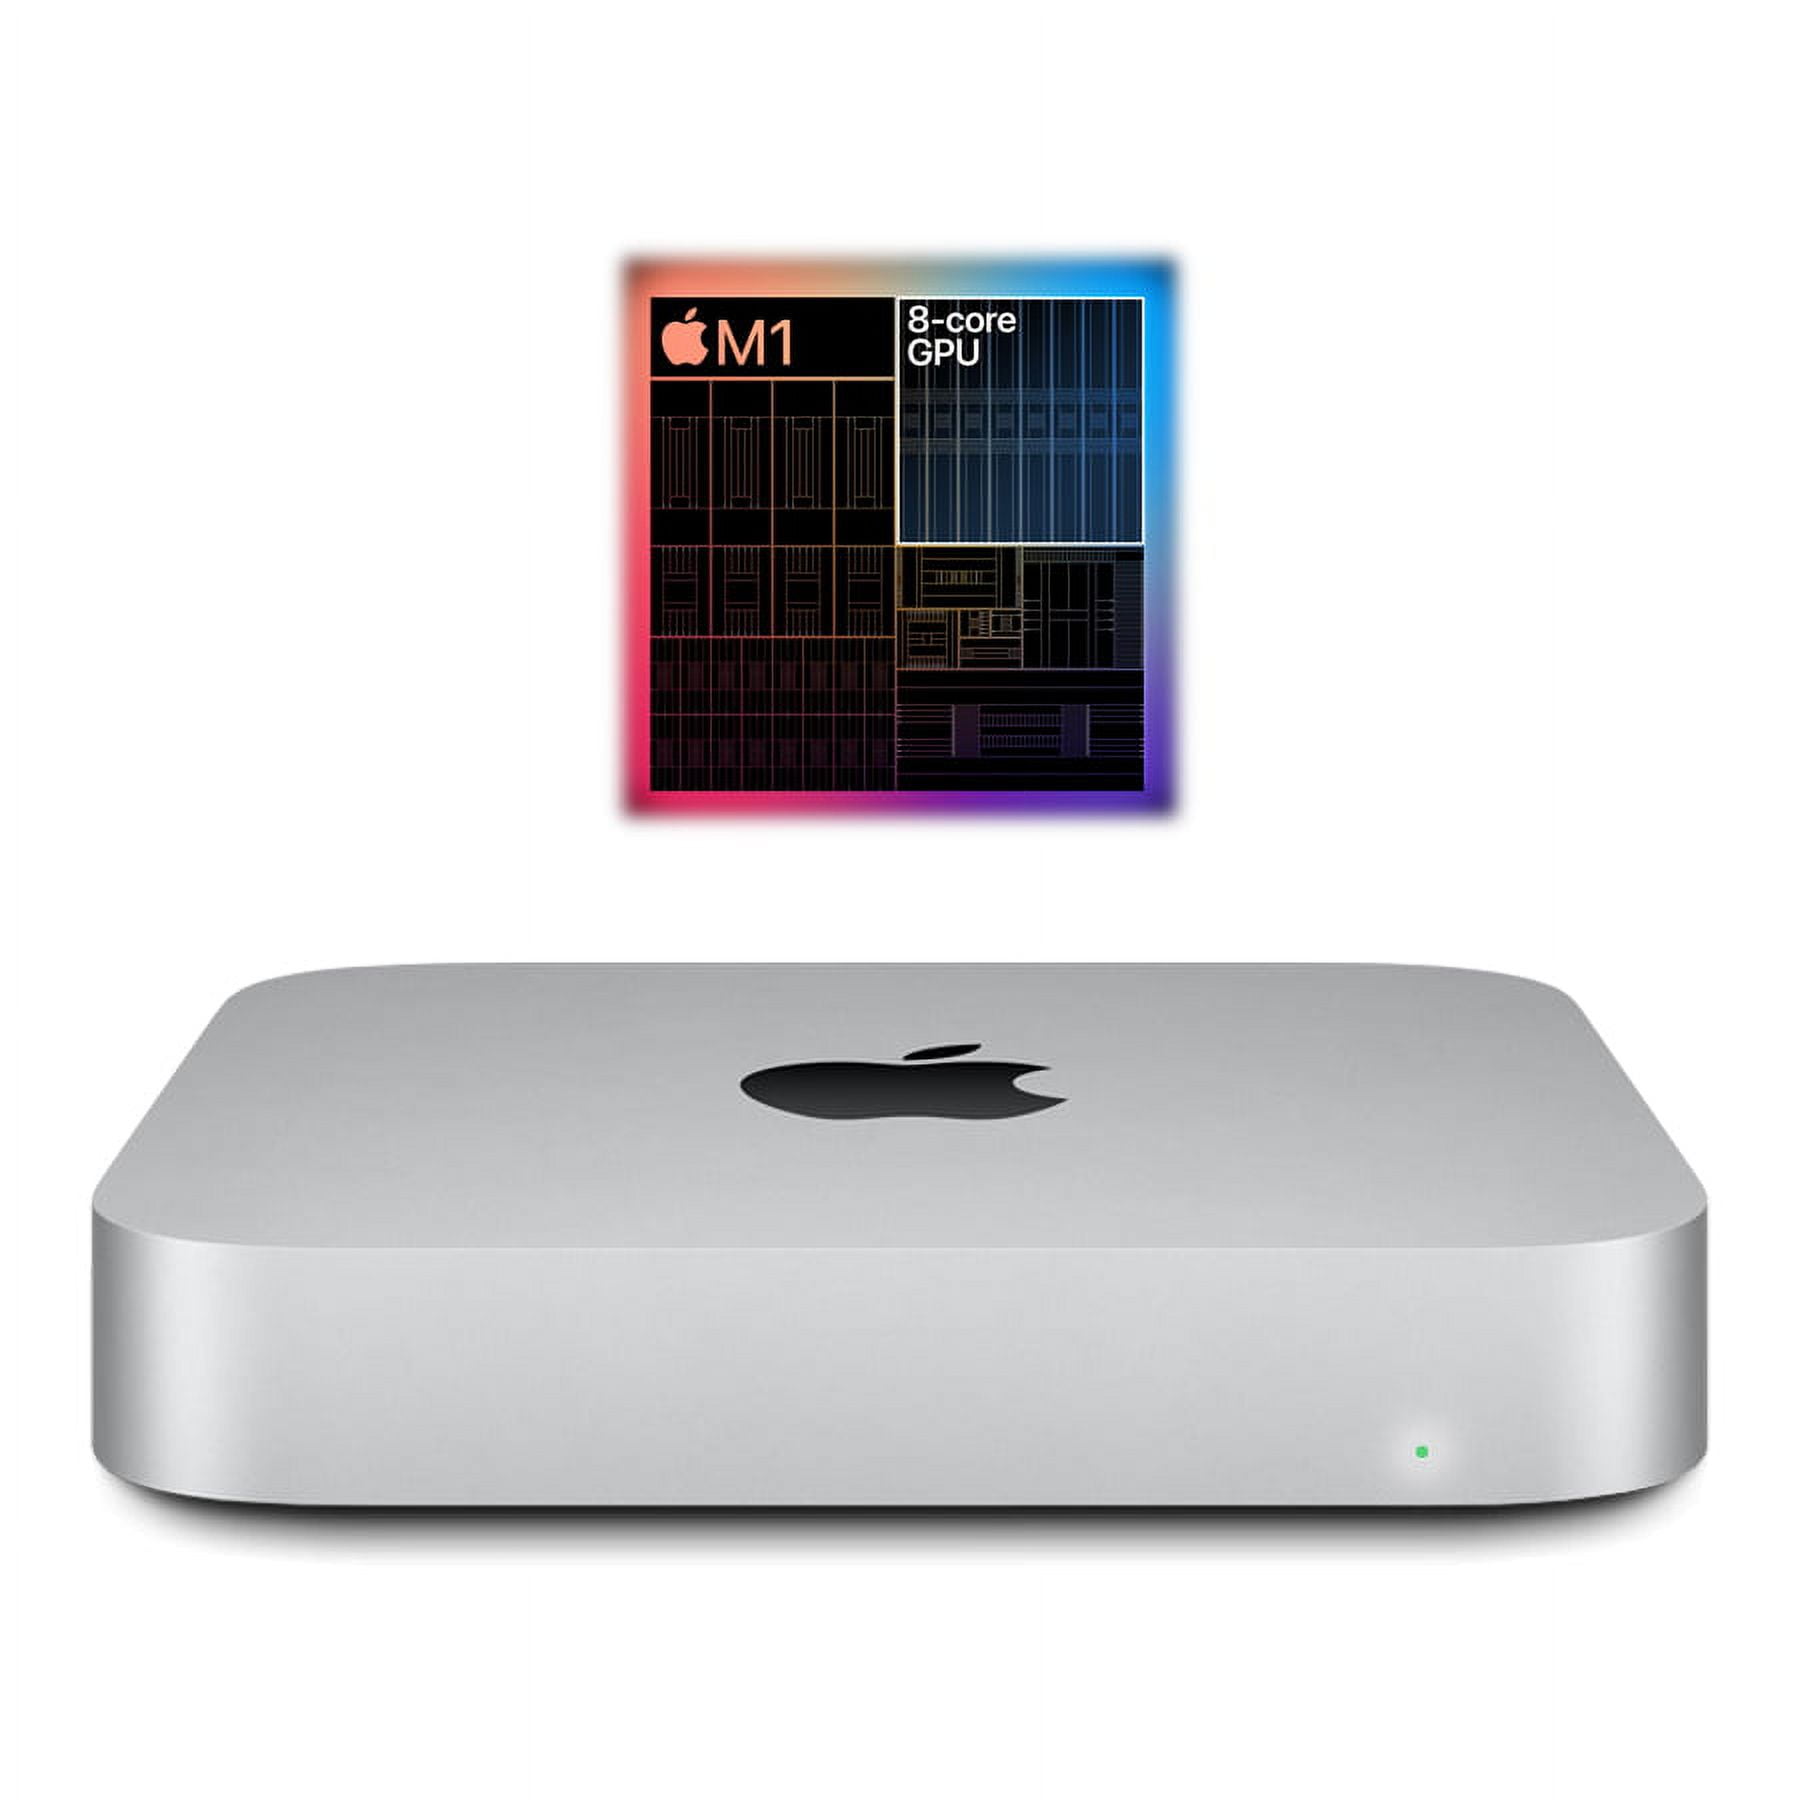 2020 Apple Mac mini Core M1 3.2GHz 8 Core CPU/8 Core GPU 8GB